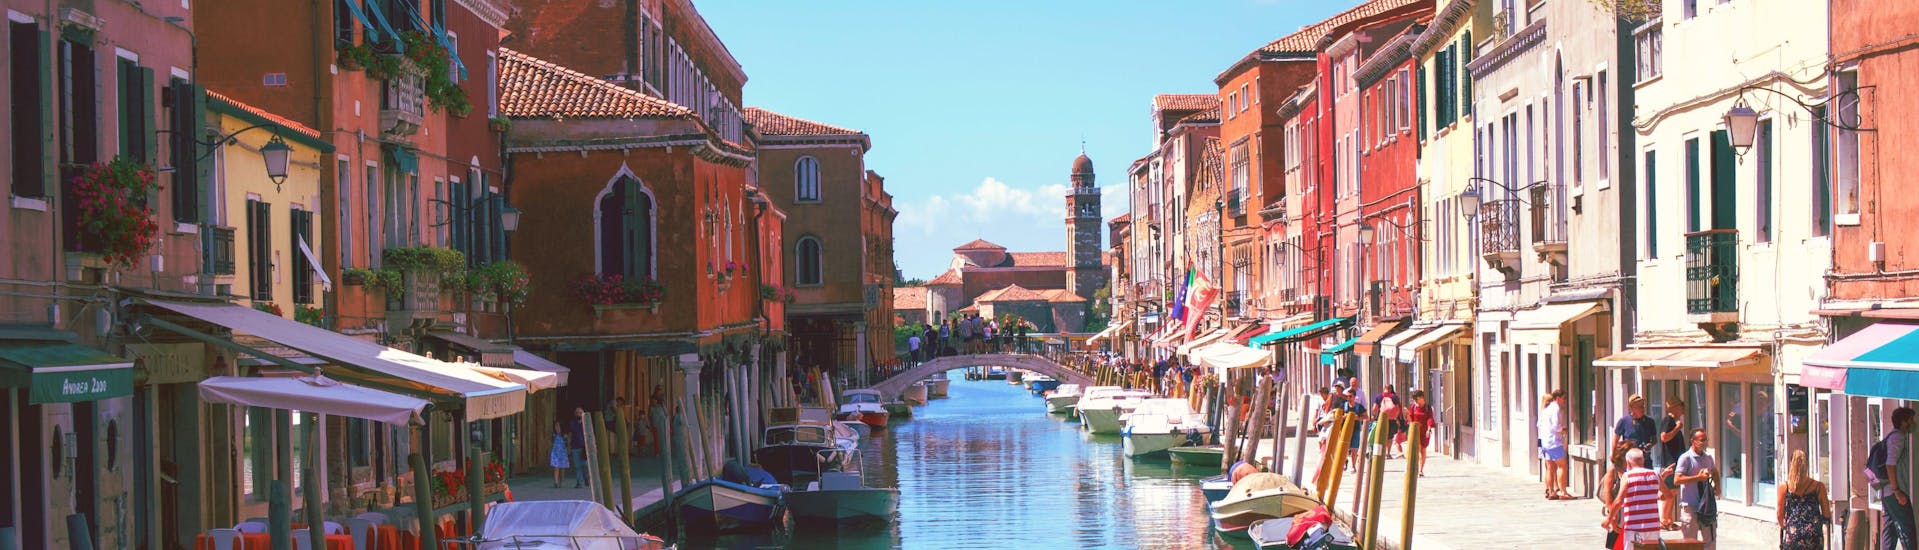 Vue de Burano, une petite île proche de Venise que l'on peut rejoindre lors d'une balade en bateau.